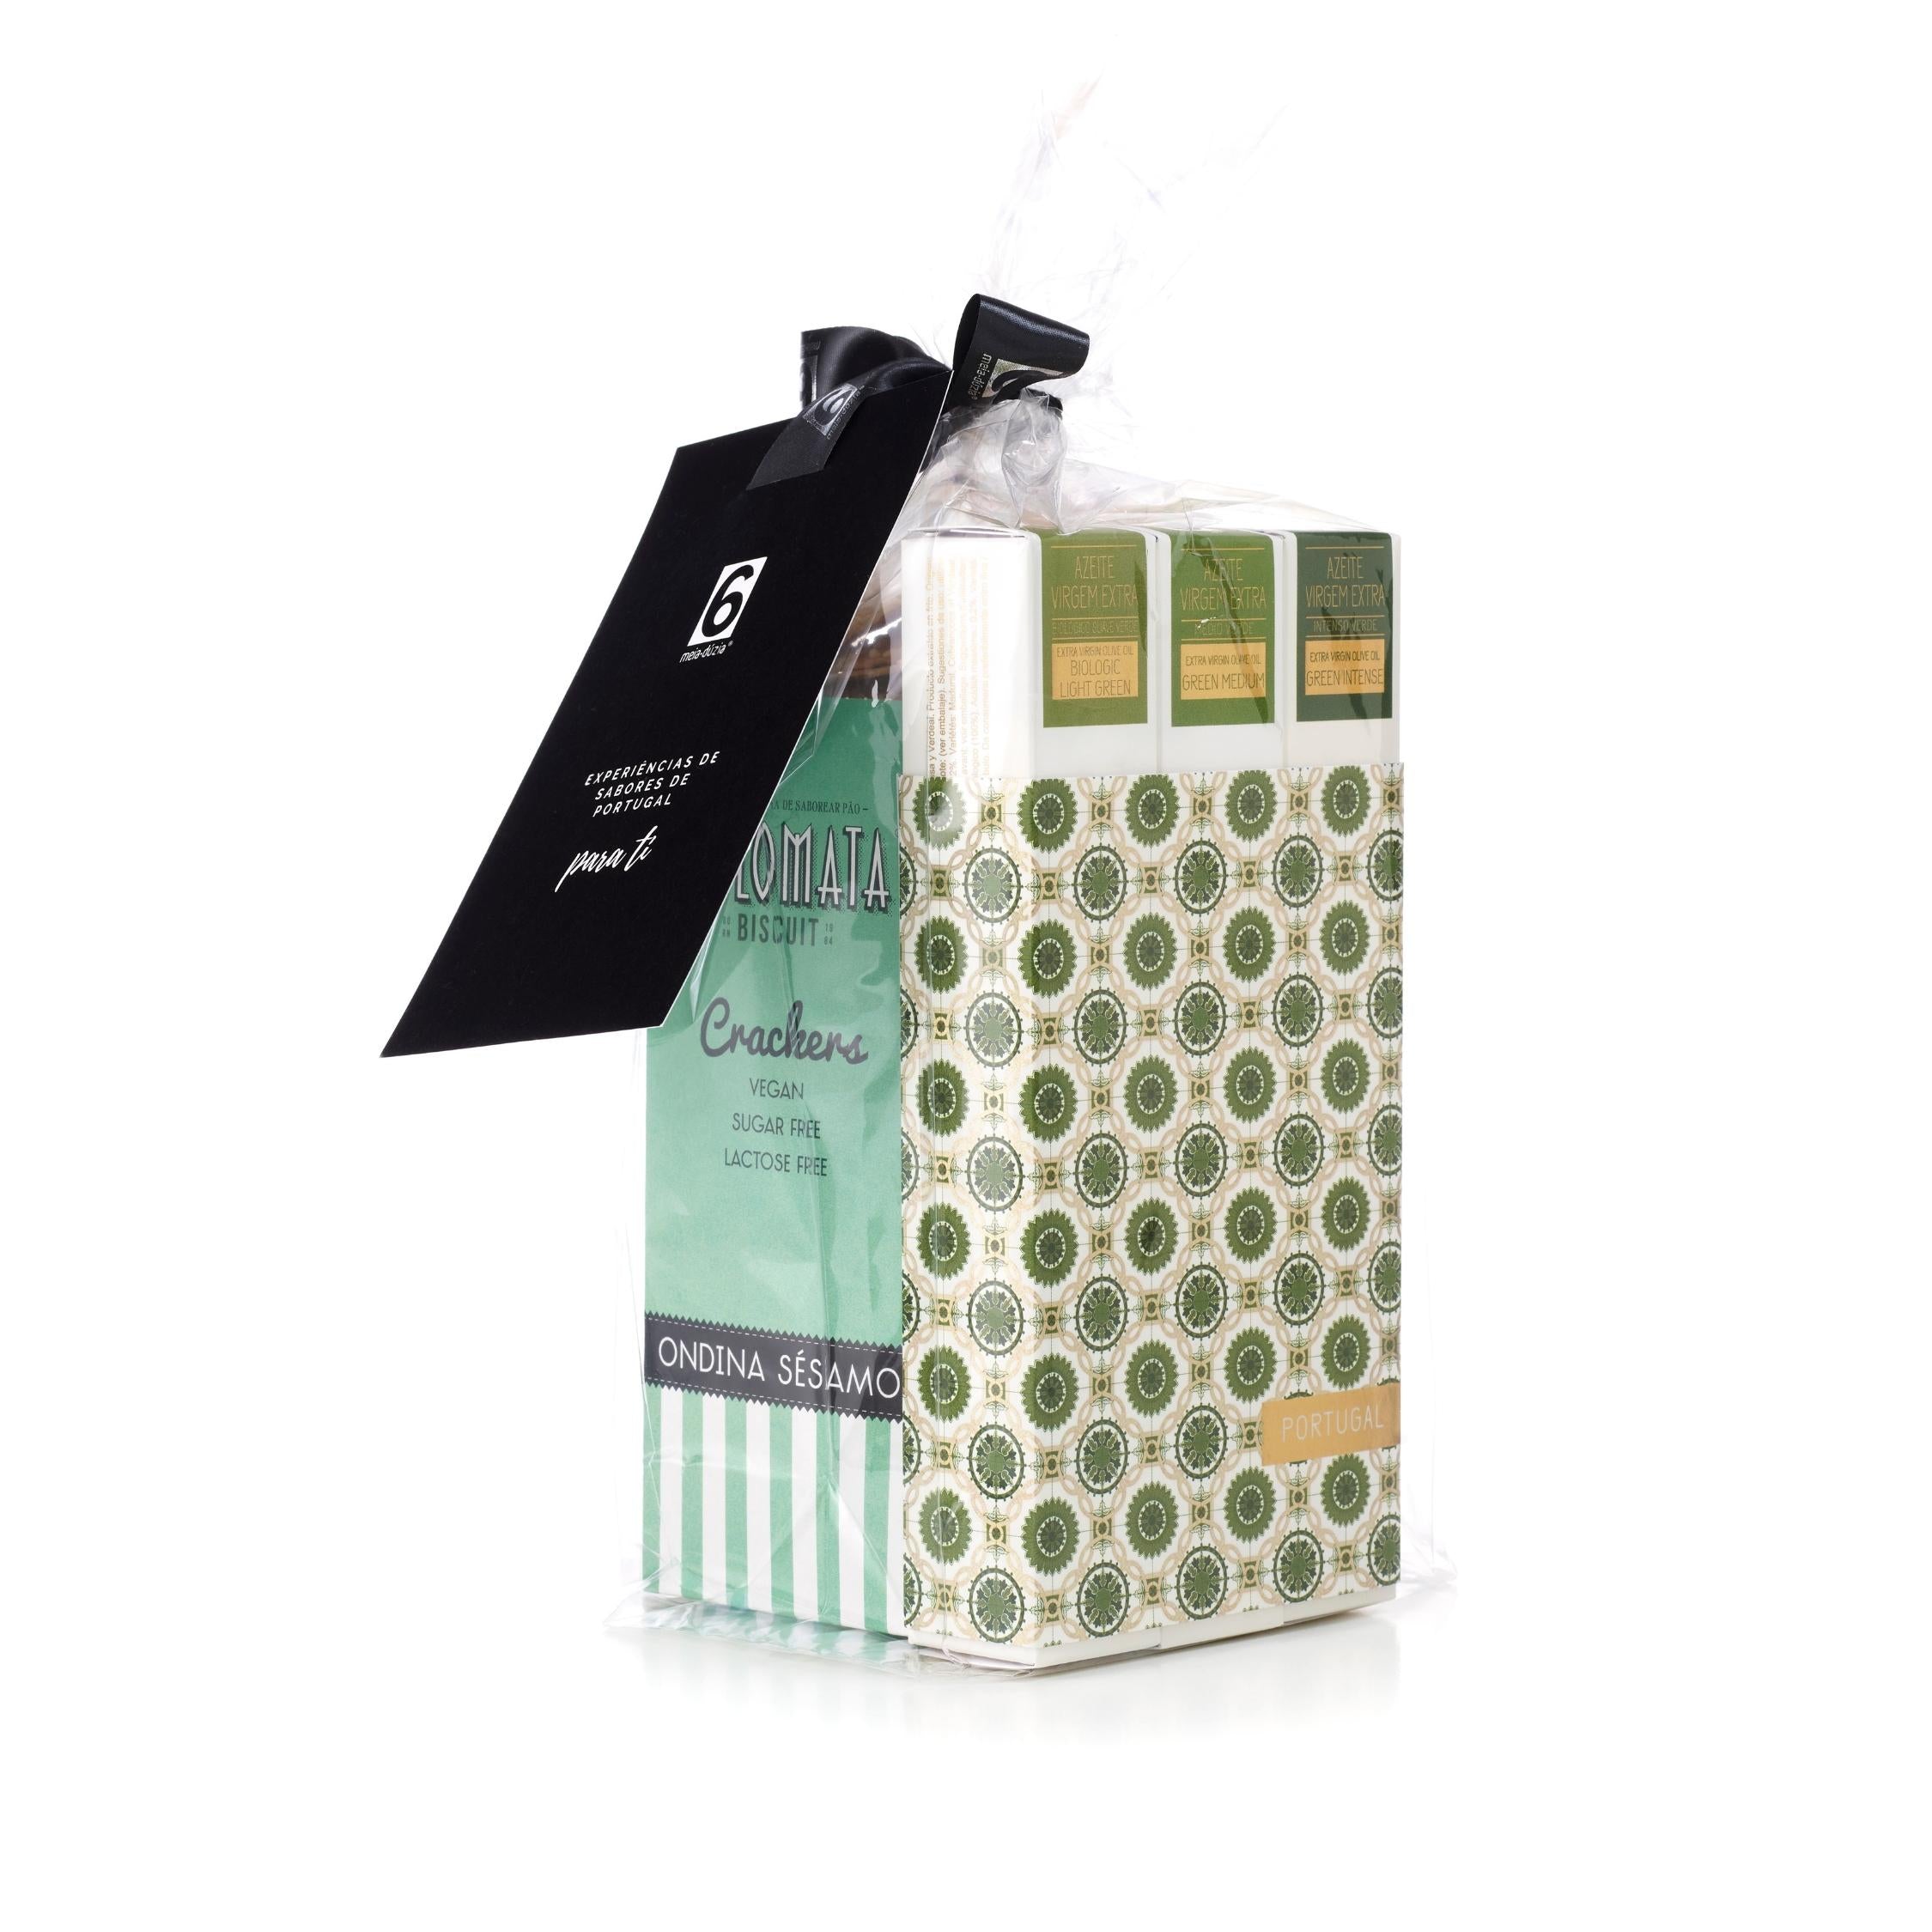 Melhor presente de Natal Vegan para empresas: Box Experiência: PACK 3 Azeites Verdes - Azulejos Portugueses + Crackers